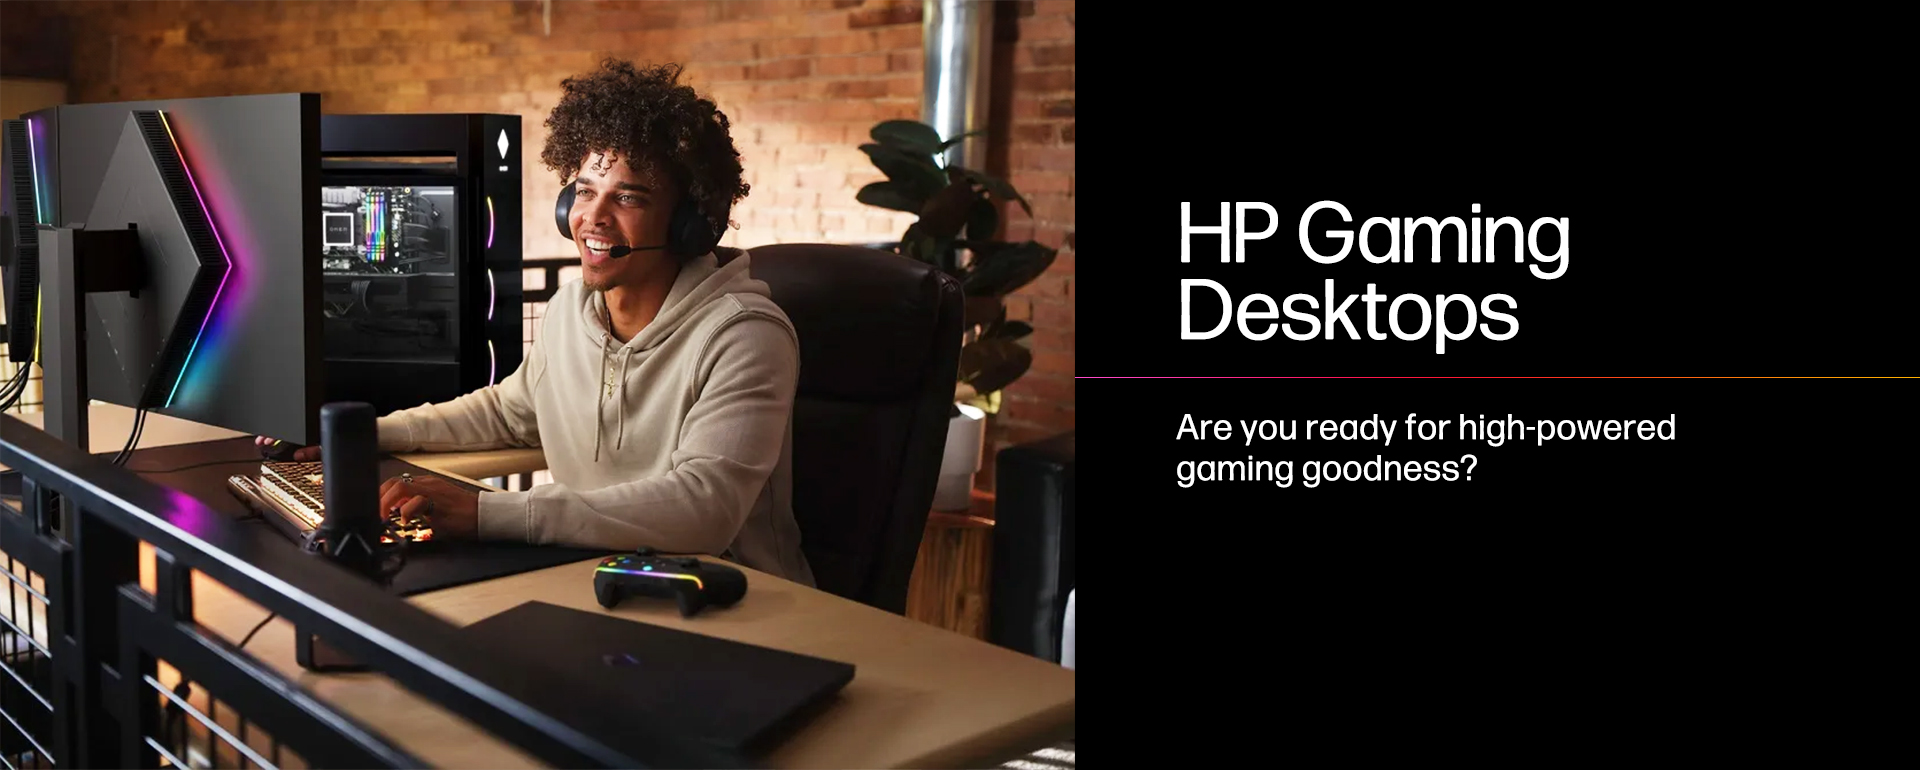 Hp Gamingdesktops 05.22.banner